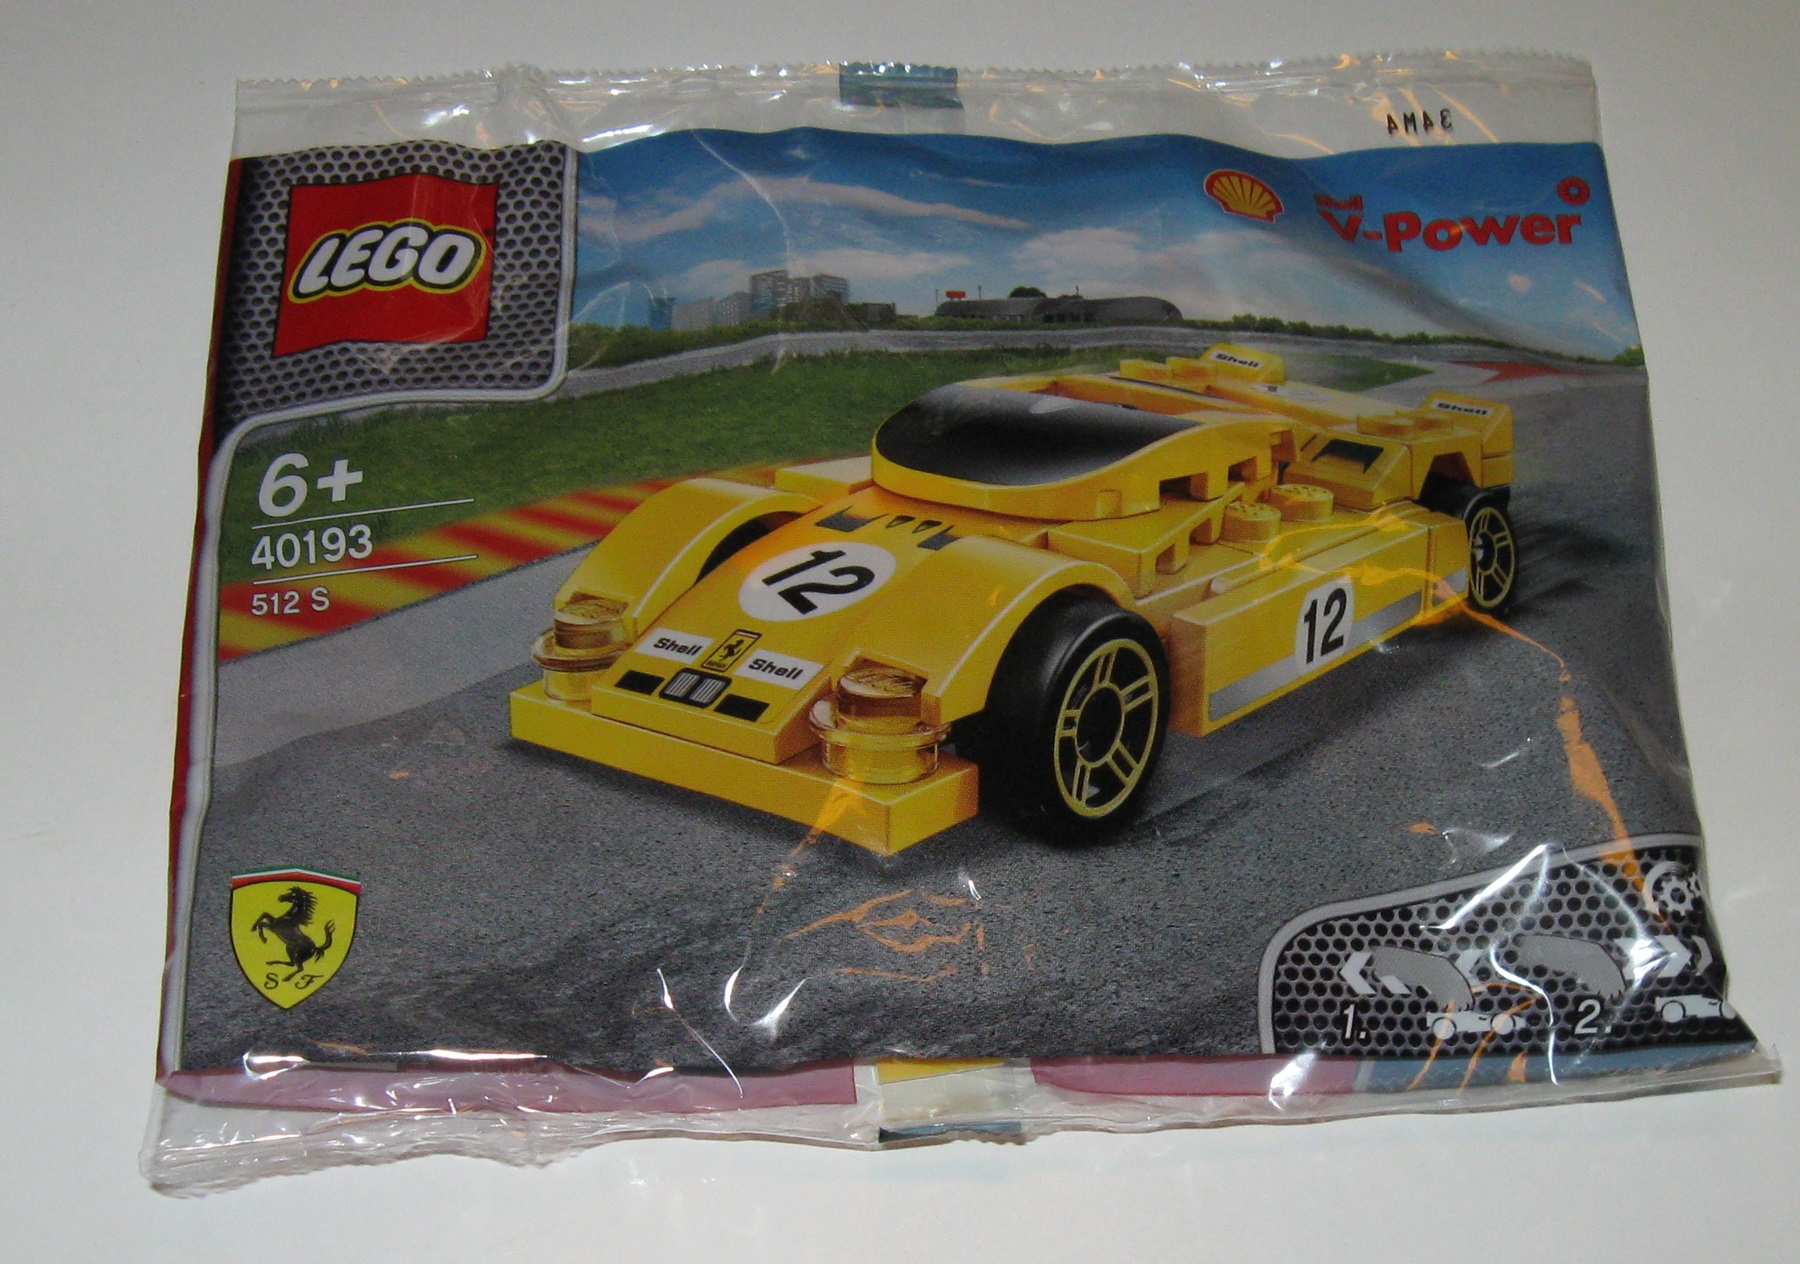 0080 Lego 40193 V-Power